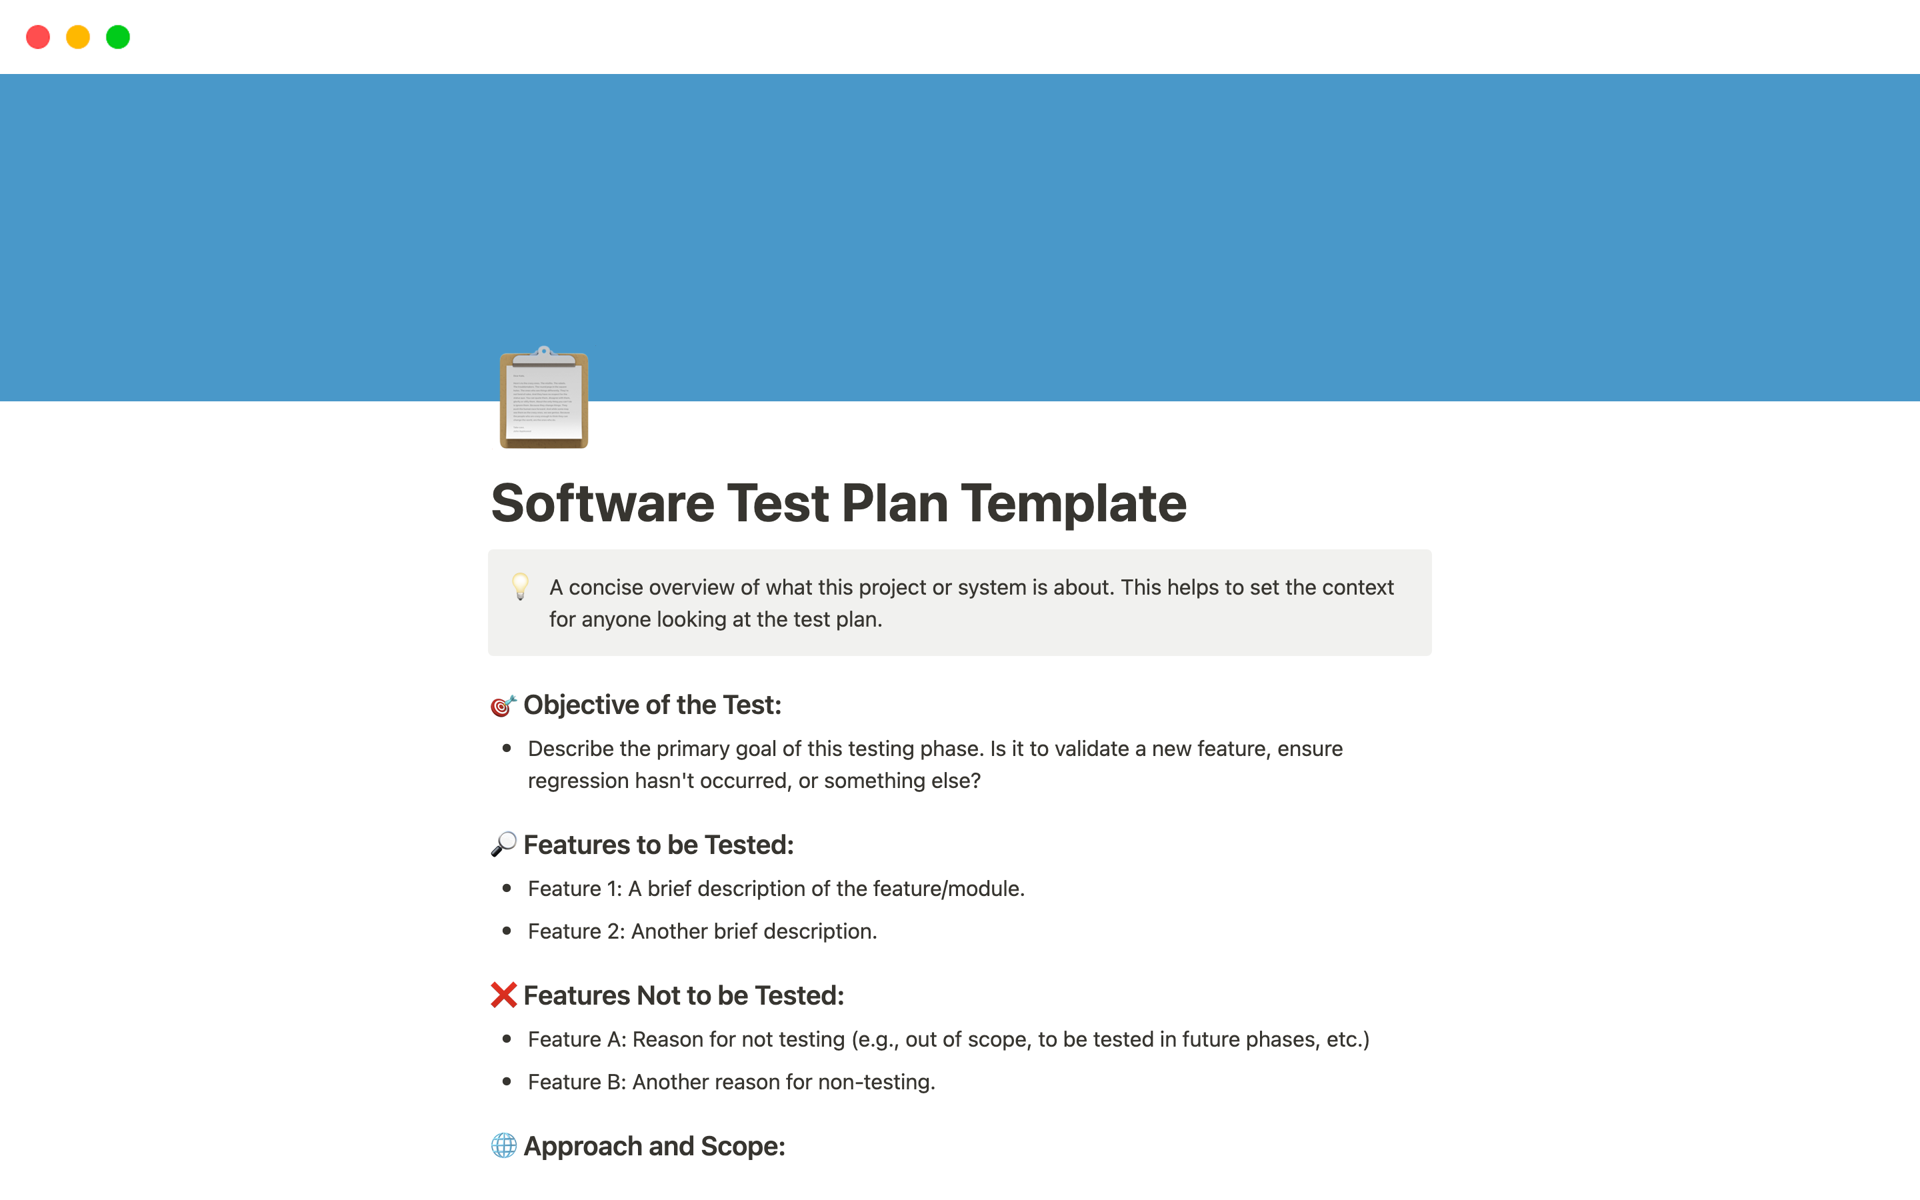 Vista previa de plantilla para Software Test Plan